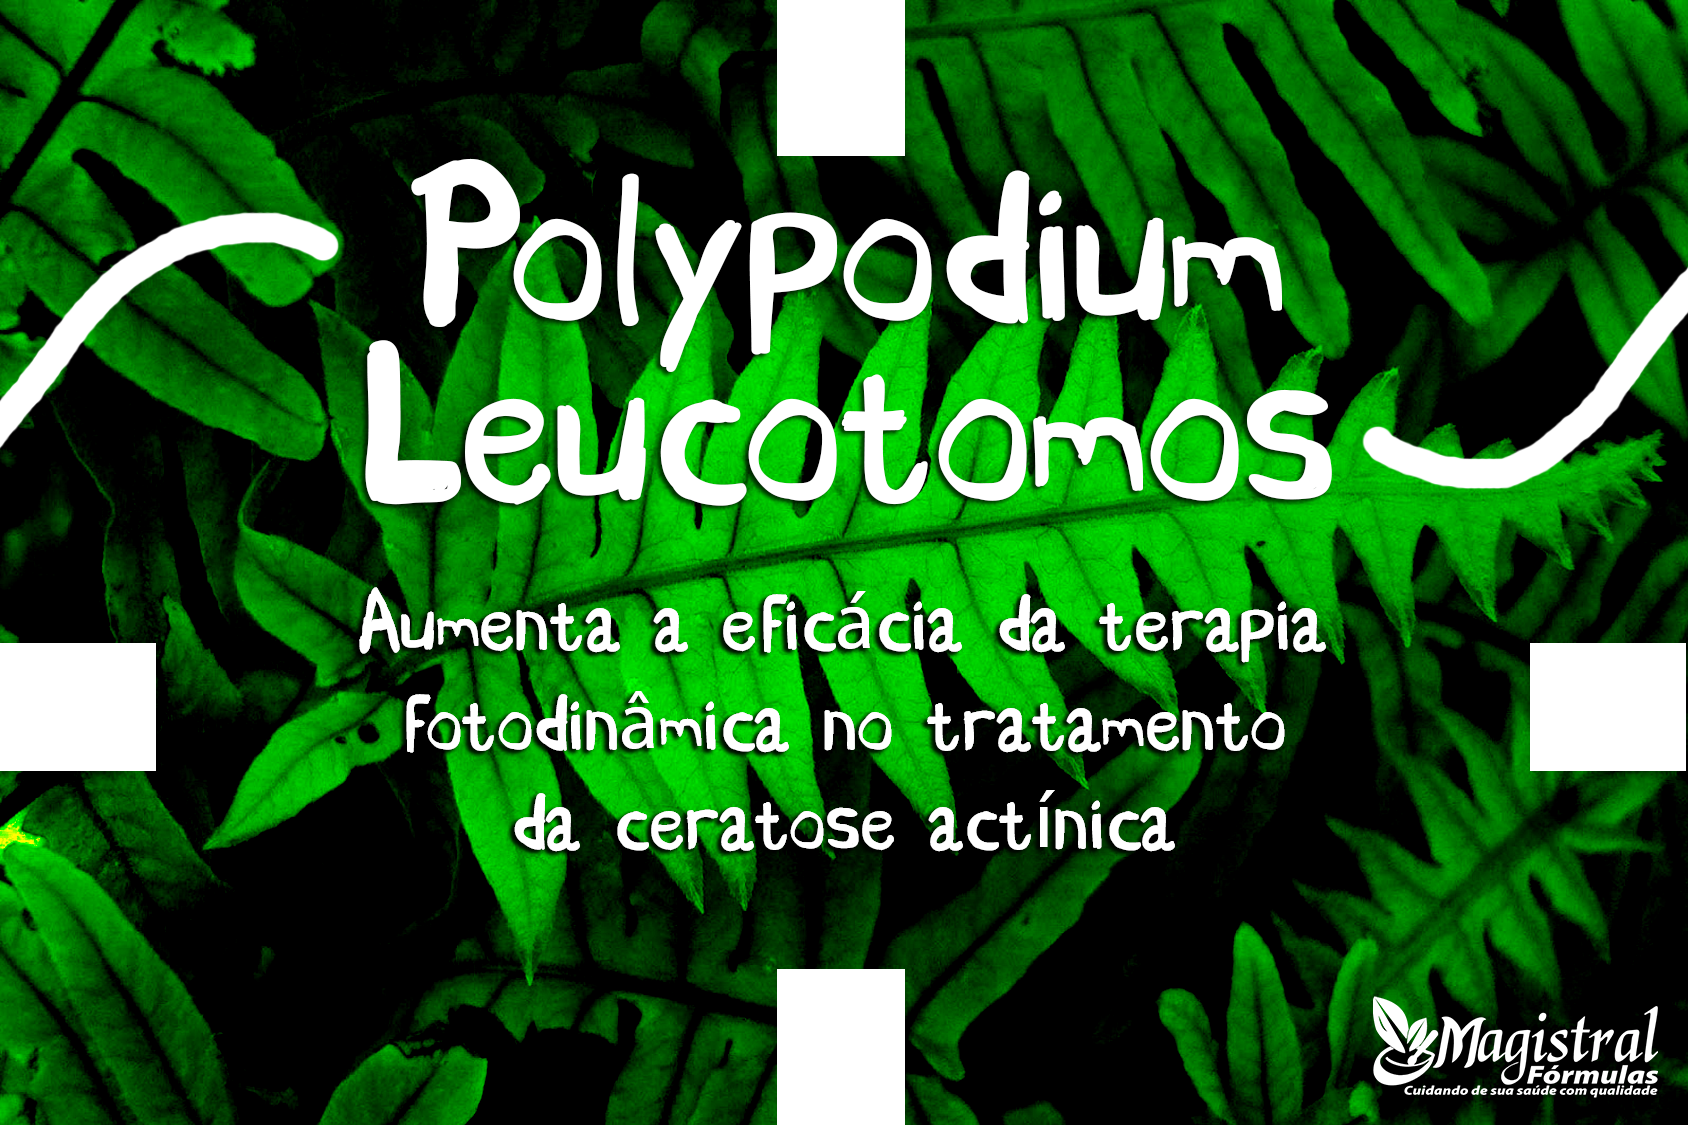 polypodium